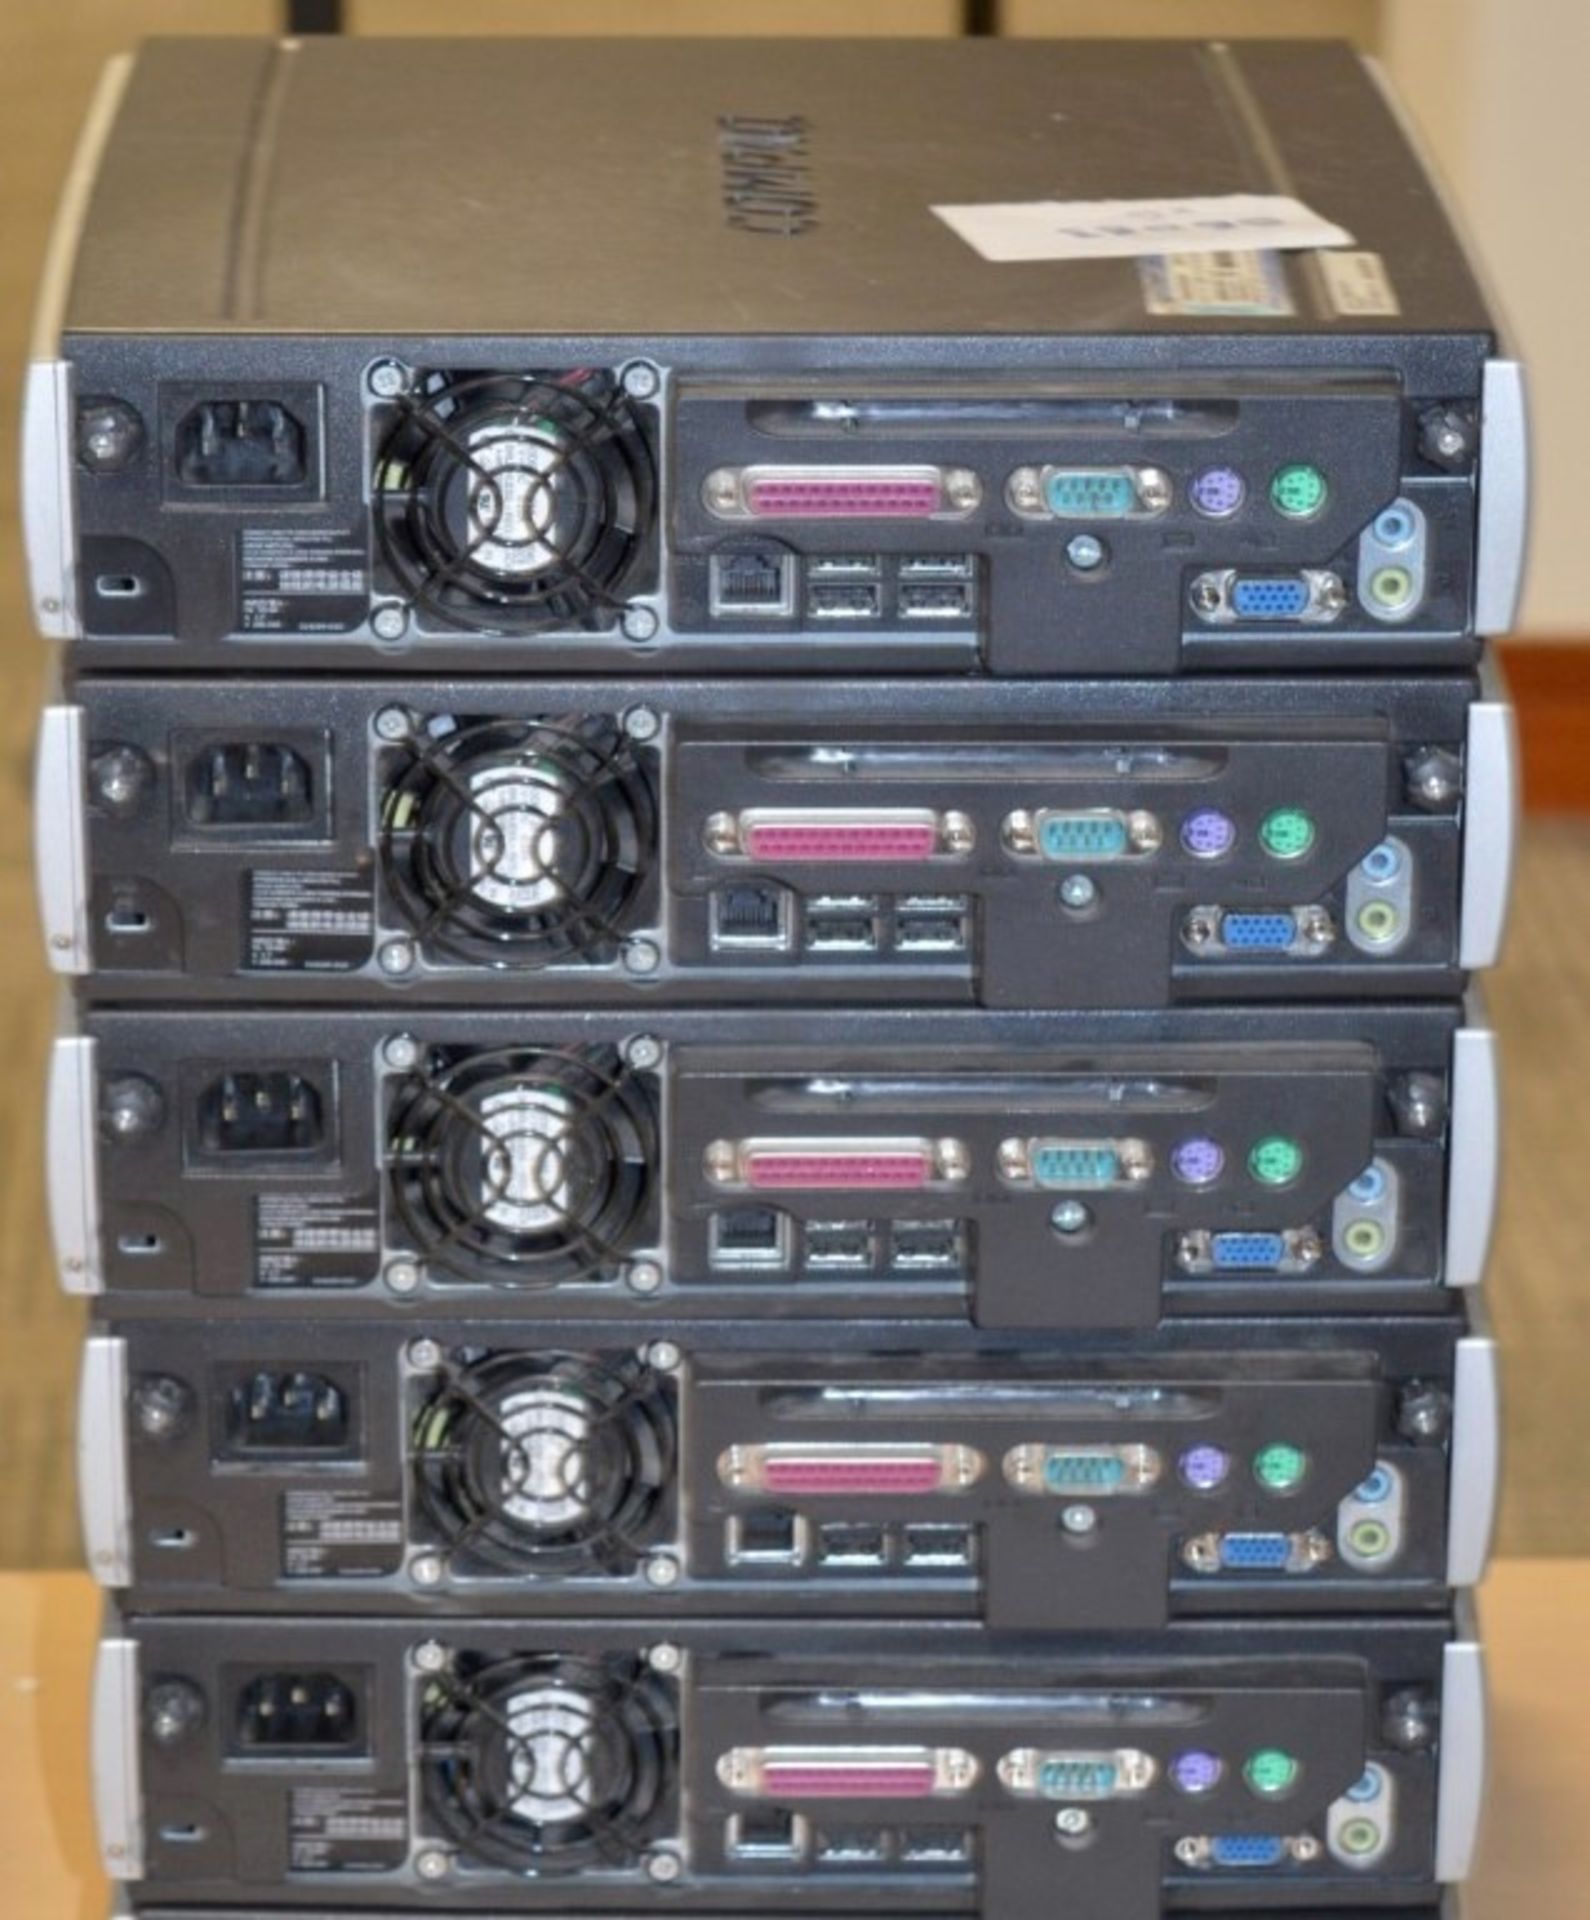 5 x Compaq D51U Small Form Factors Desktop Computers - Intel Pentium - Various Ram Sizes - HARD DISK - Image 2 of 3